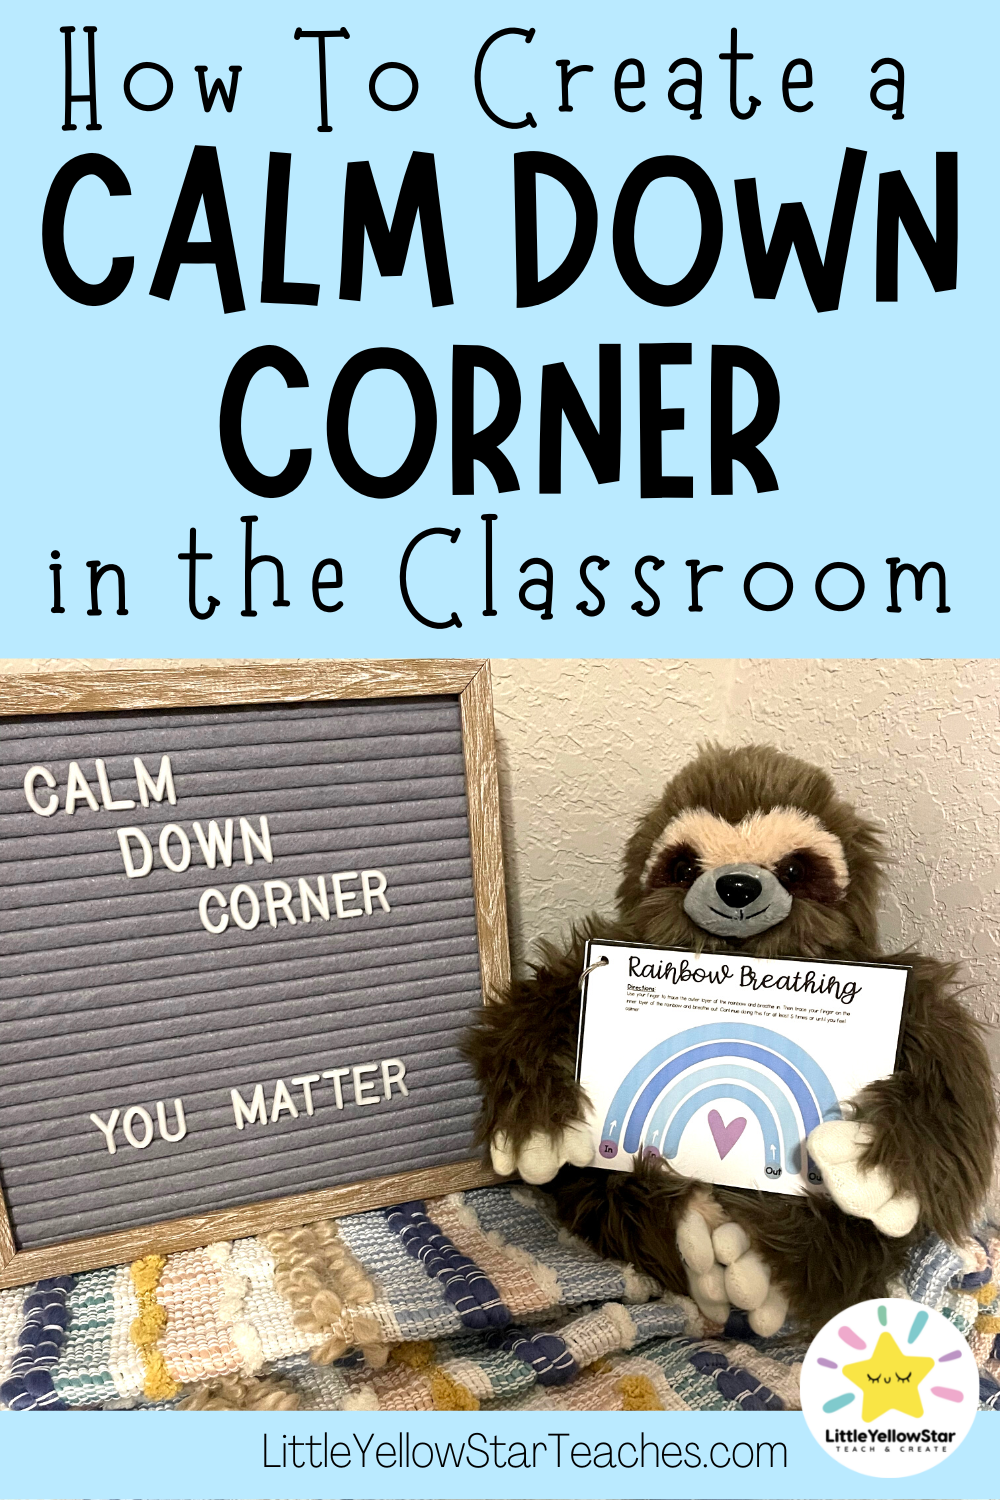 http://littleyellowstarteaches.com/wp-content/uploads/2022/07/littleyellowstarteaches-blog-post-how-to-create-a-calm-down-corner-classroom.png